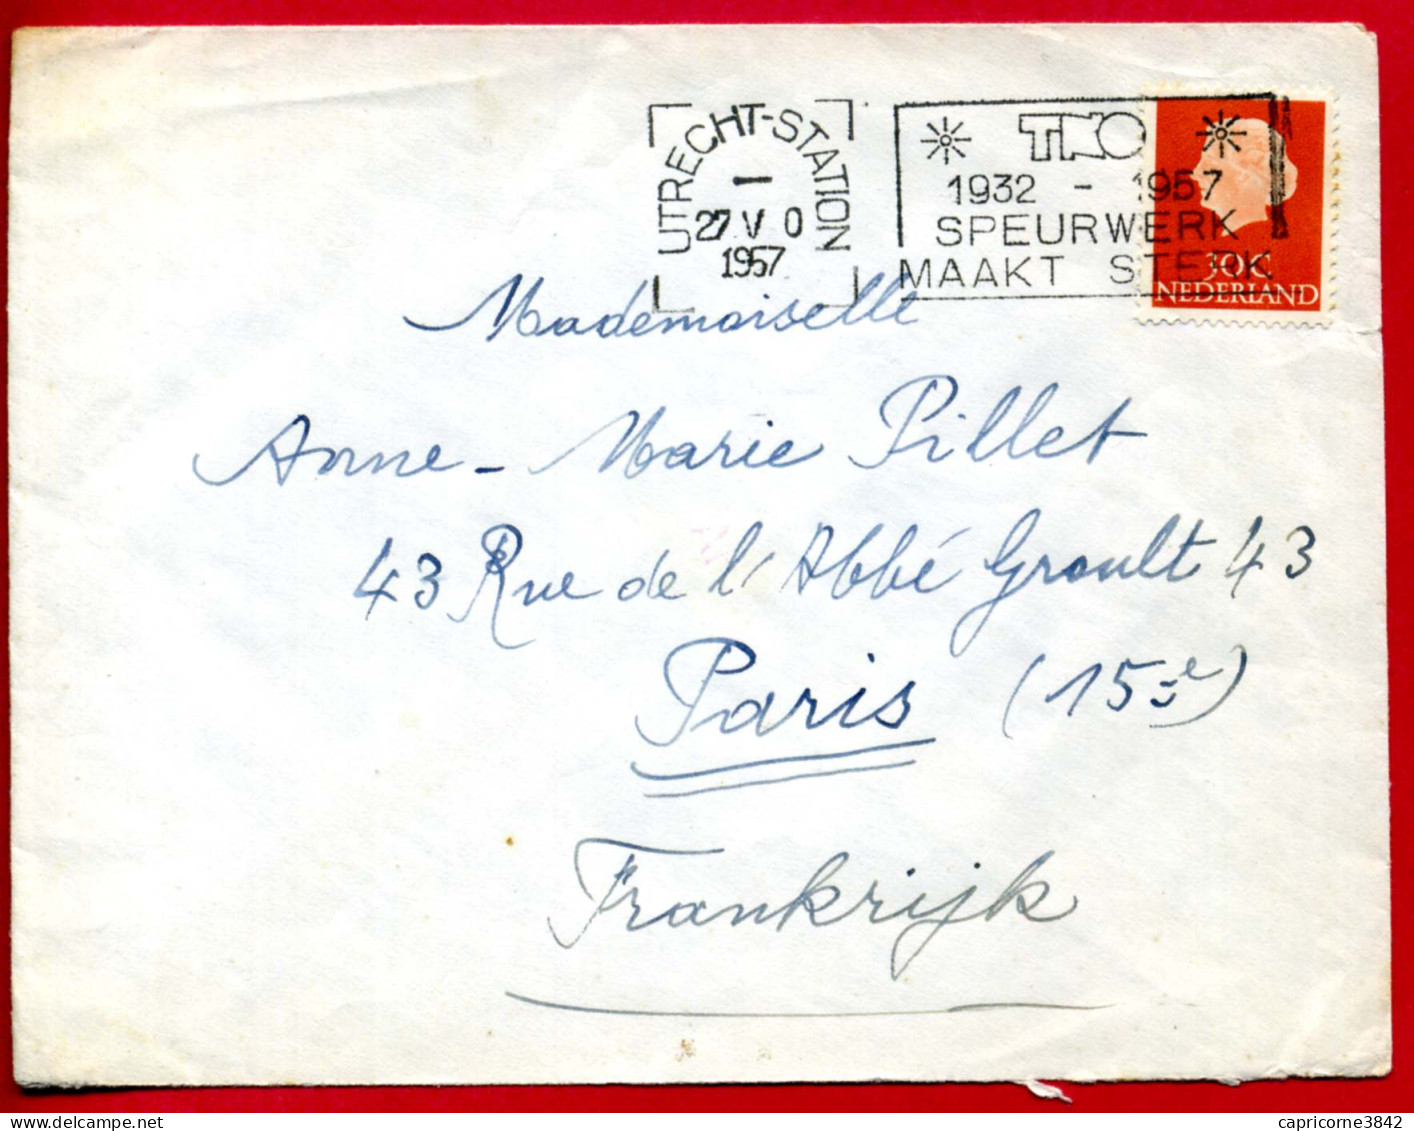 1957 - Pays Bas - Cachet ULTRECHT-STATION - "TNO - 1932-1957 - SPEURWERK MAAKT STERK" - Postal History